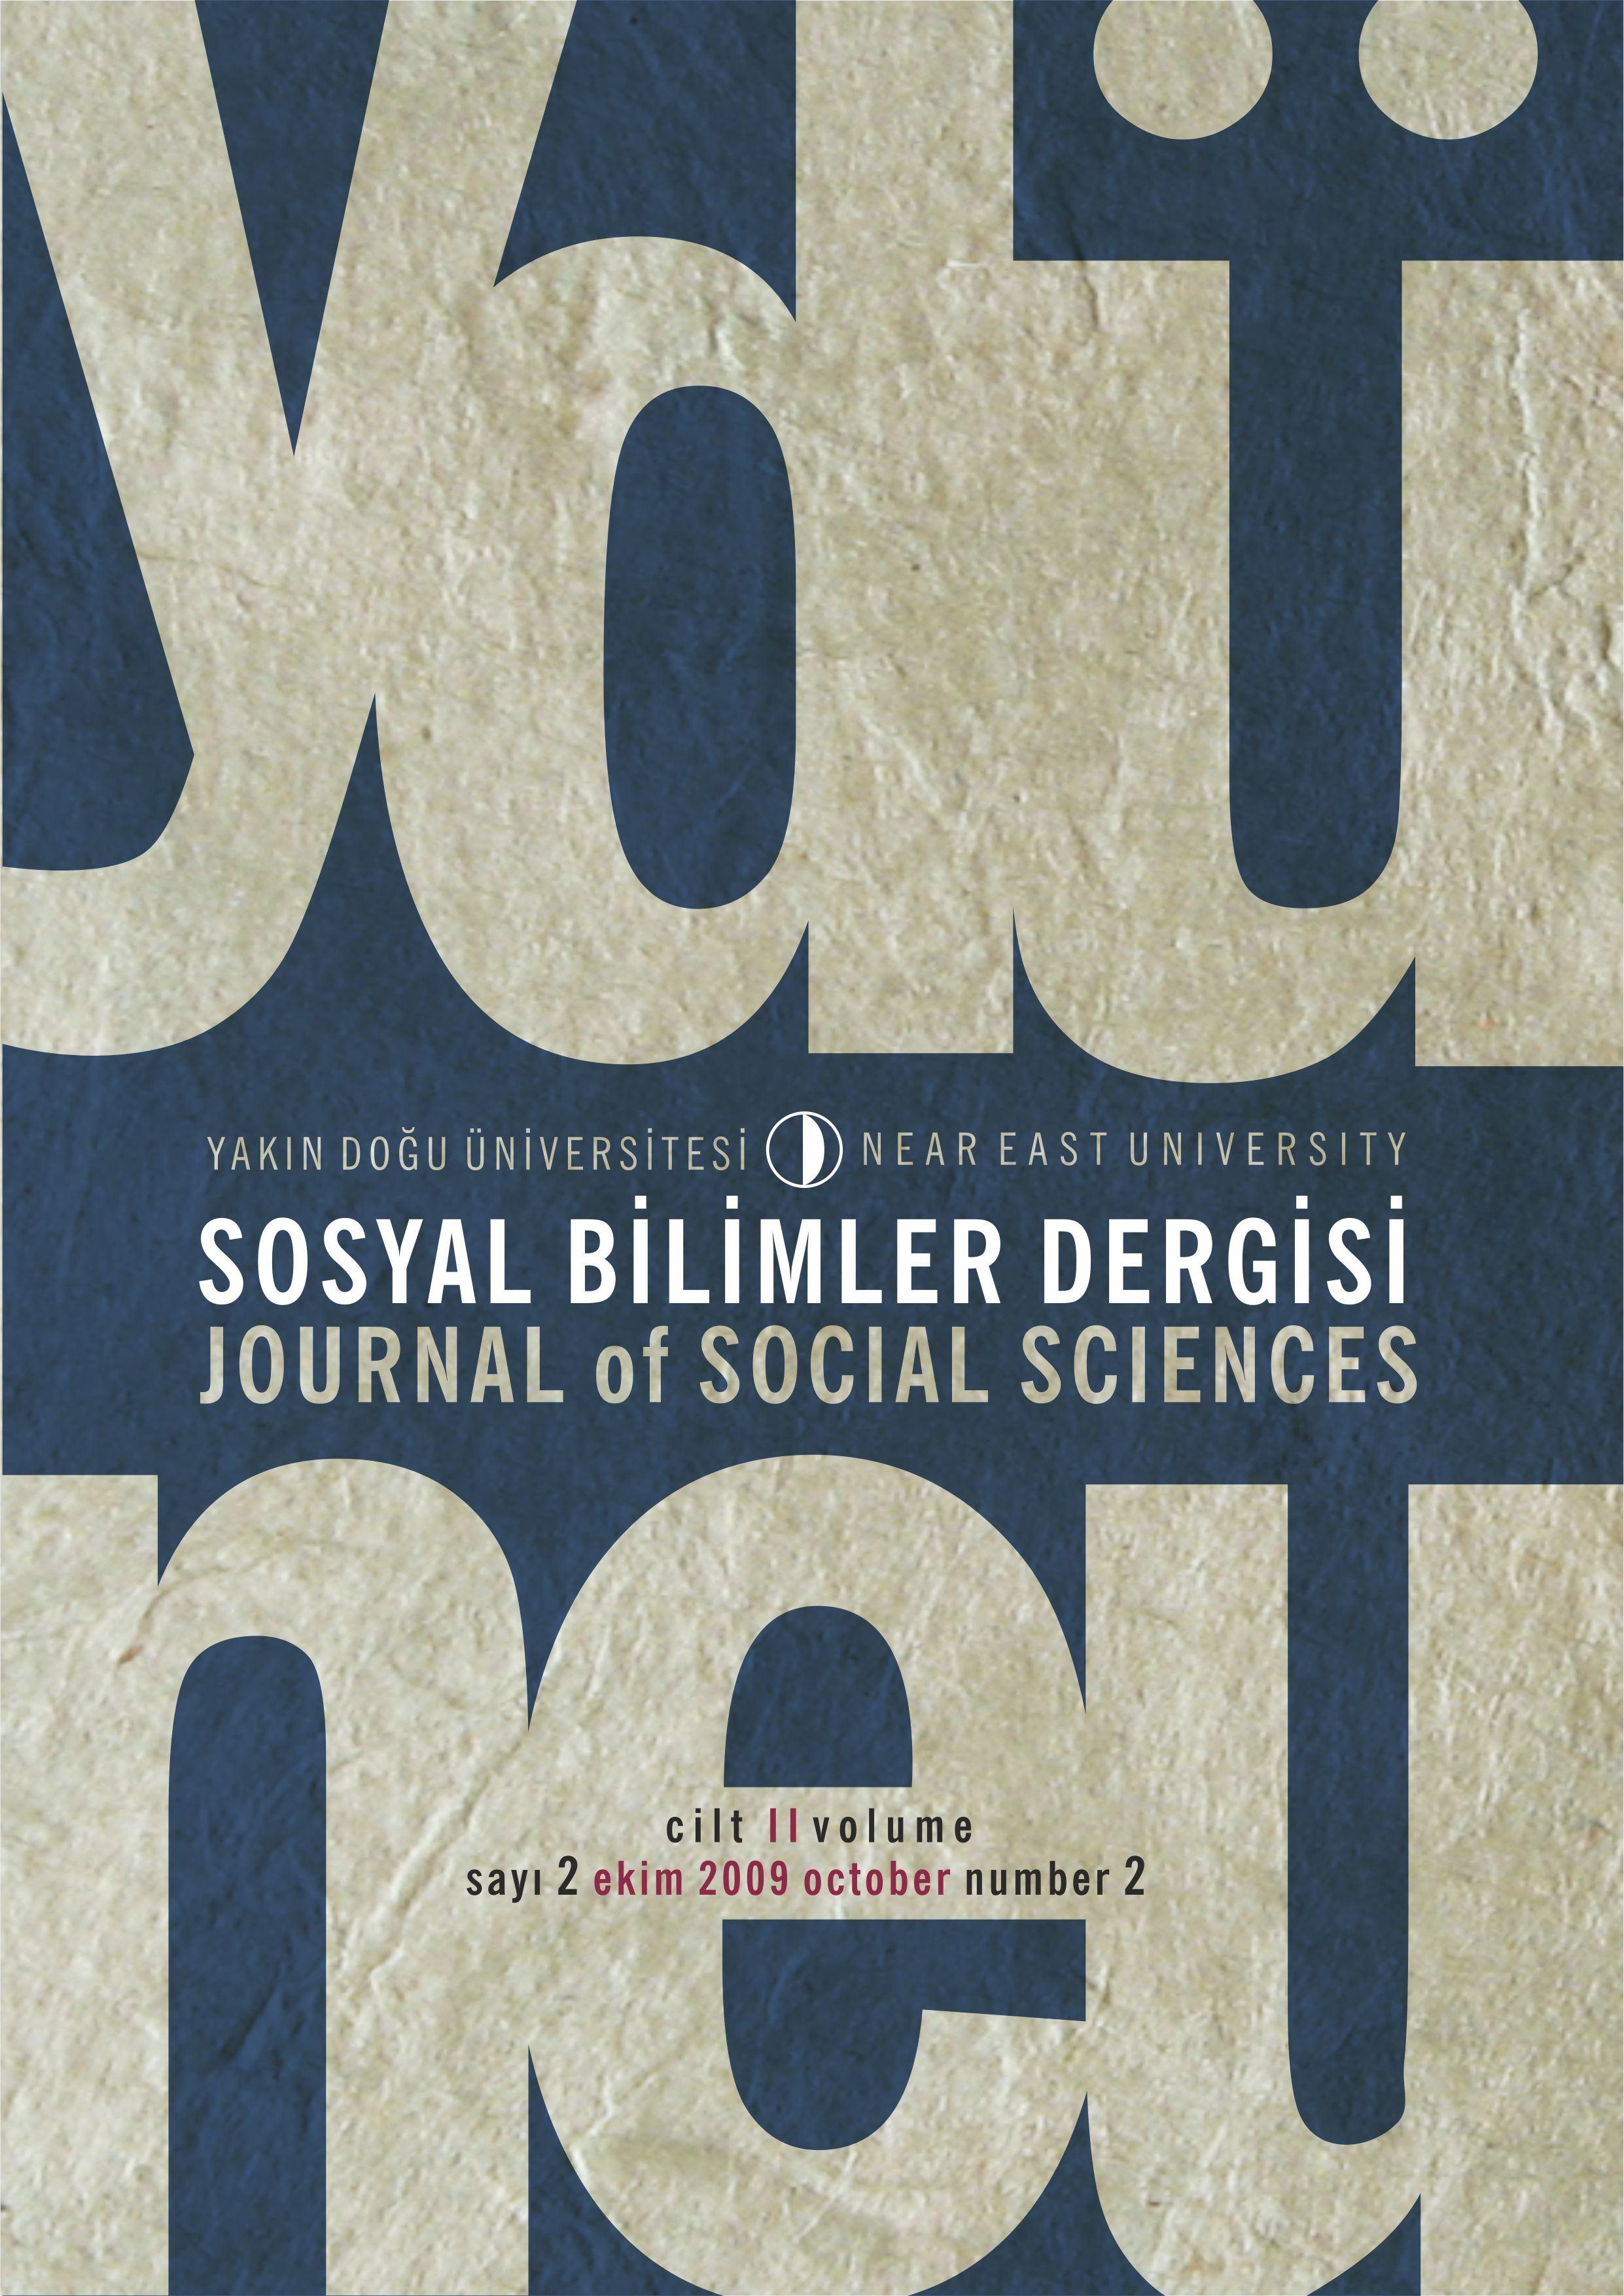 					Cilt 2 Sayı 2 (2009): Yakın Doğu Üniversitesi Sosyal Bilimler Dergisi Gör
				